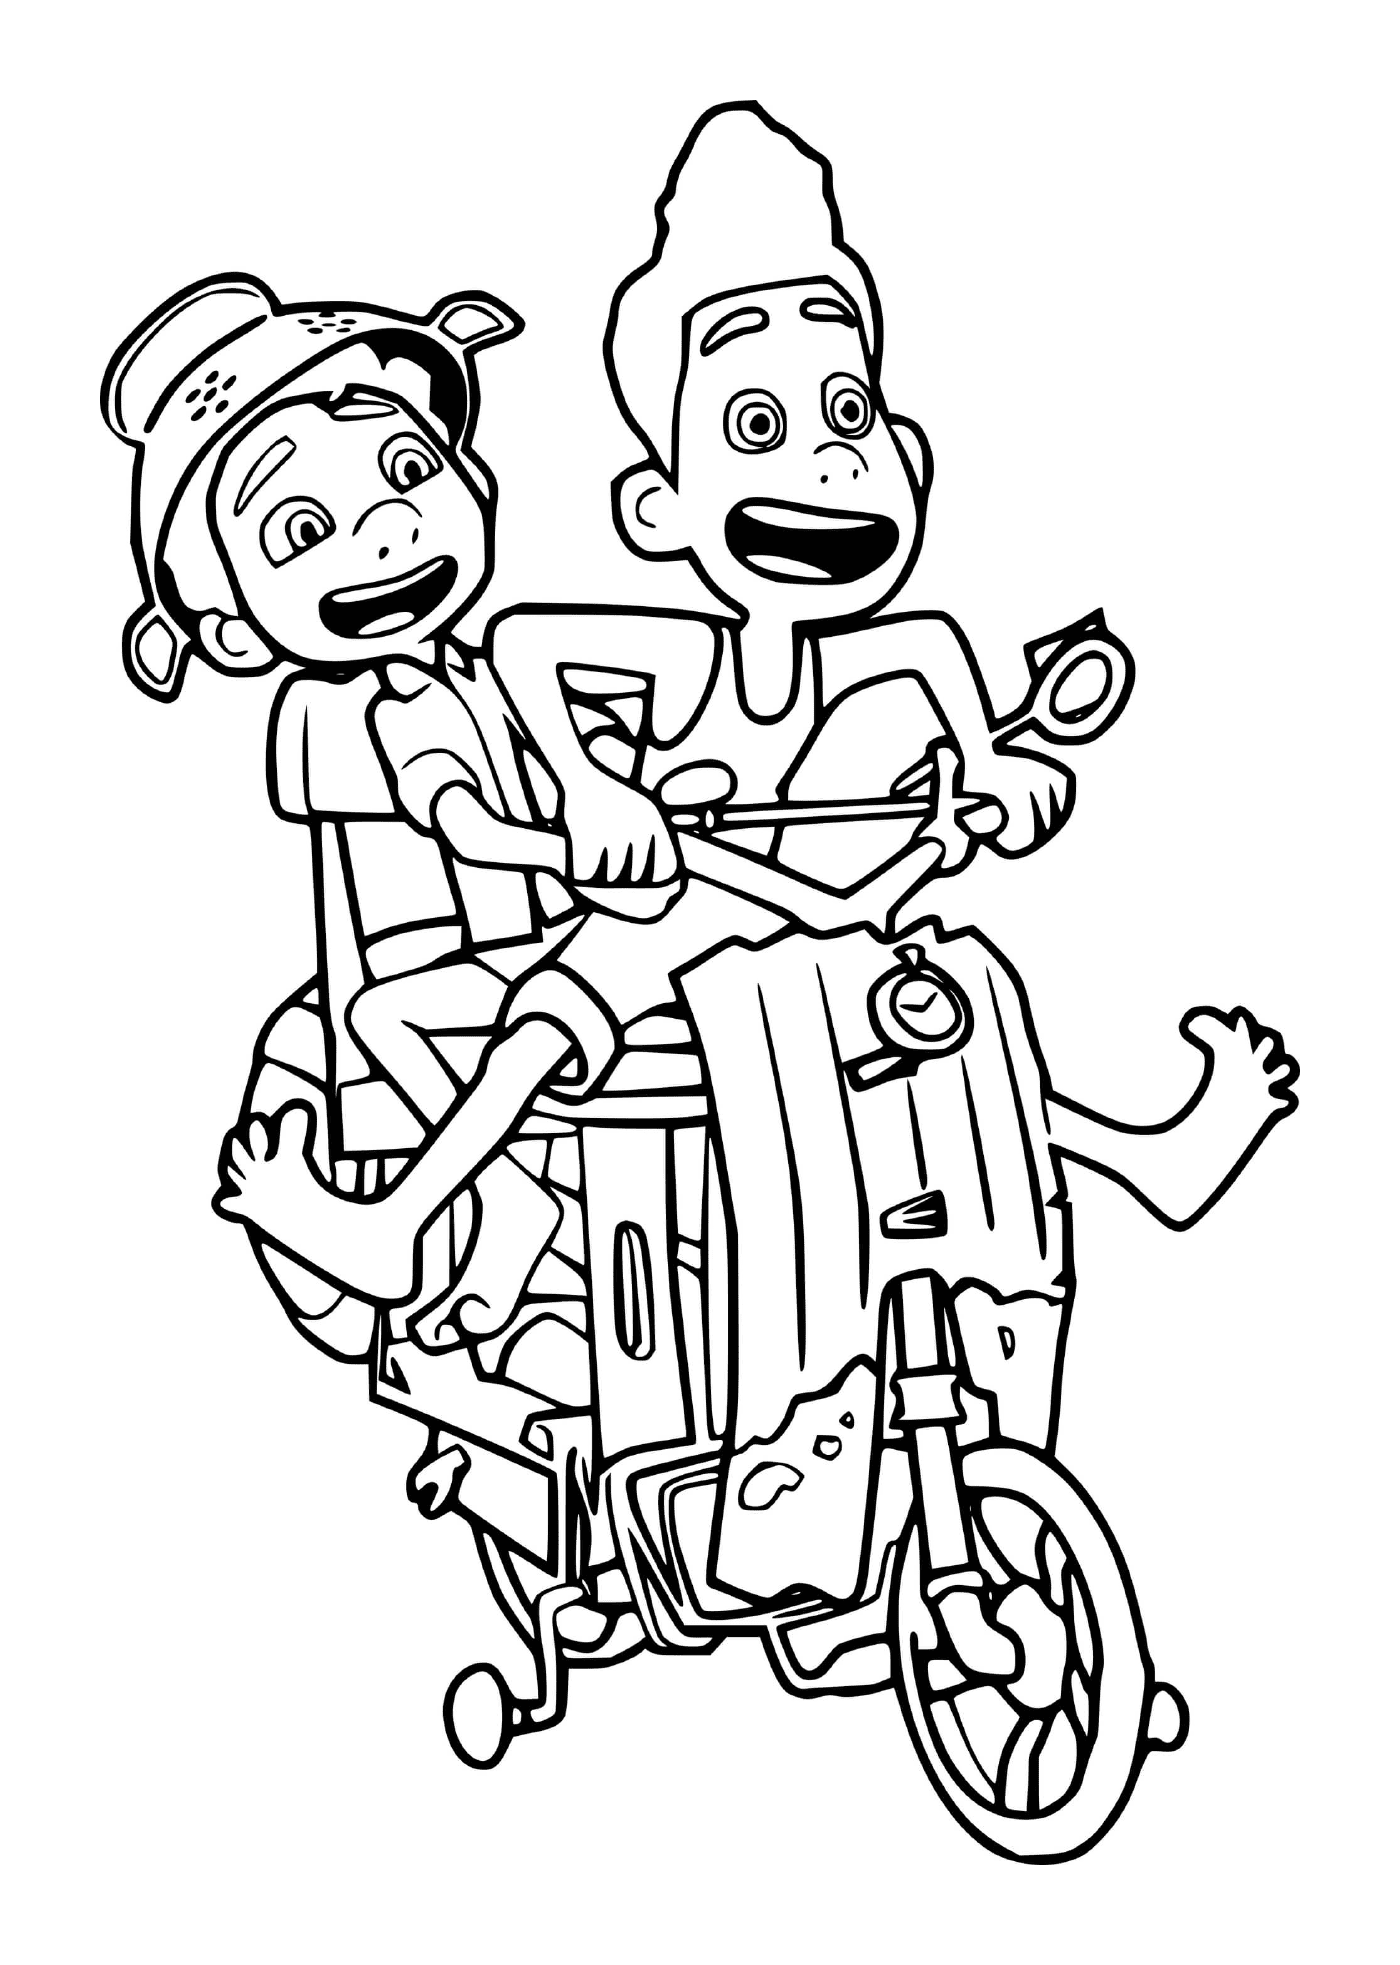  Junge und Mädchen auf einem Motorrad 